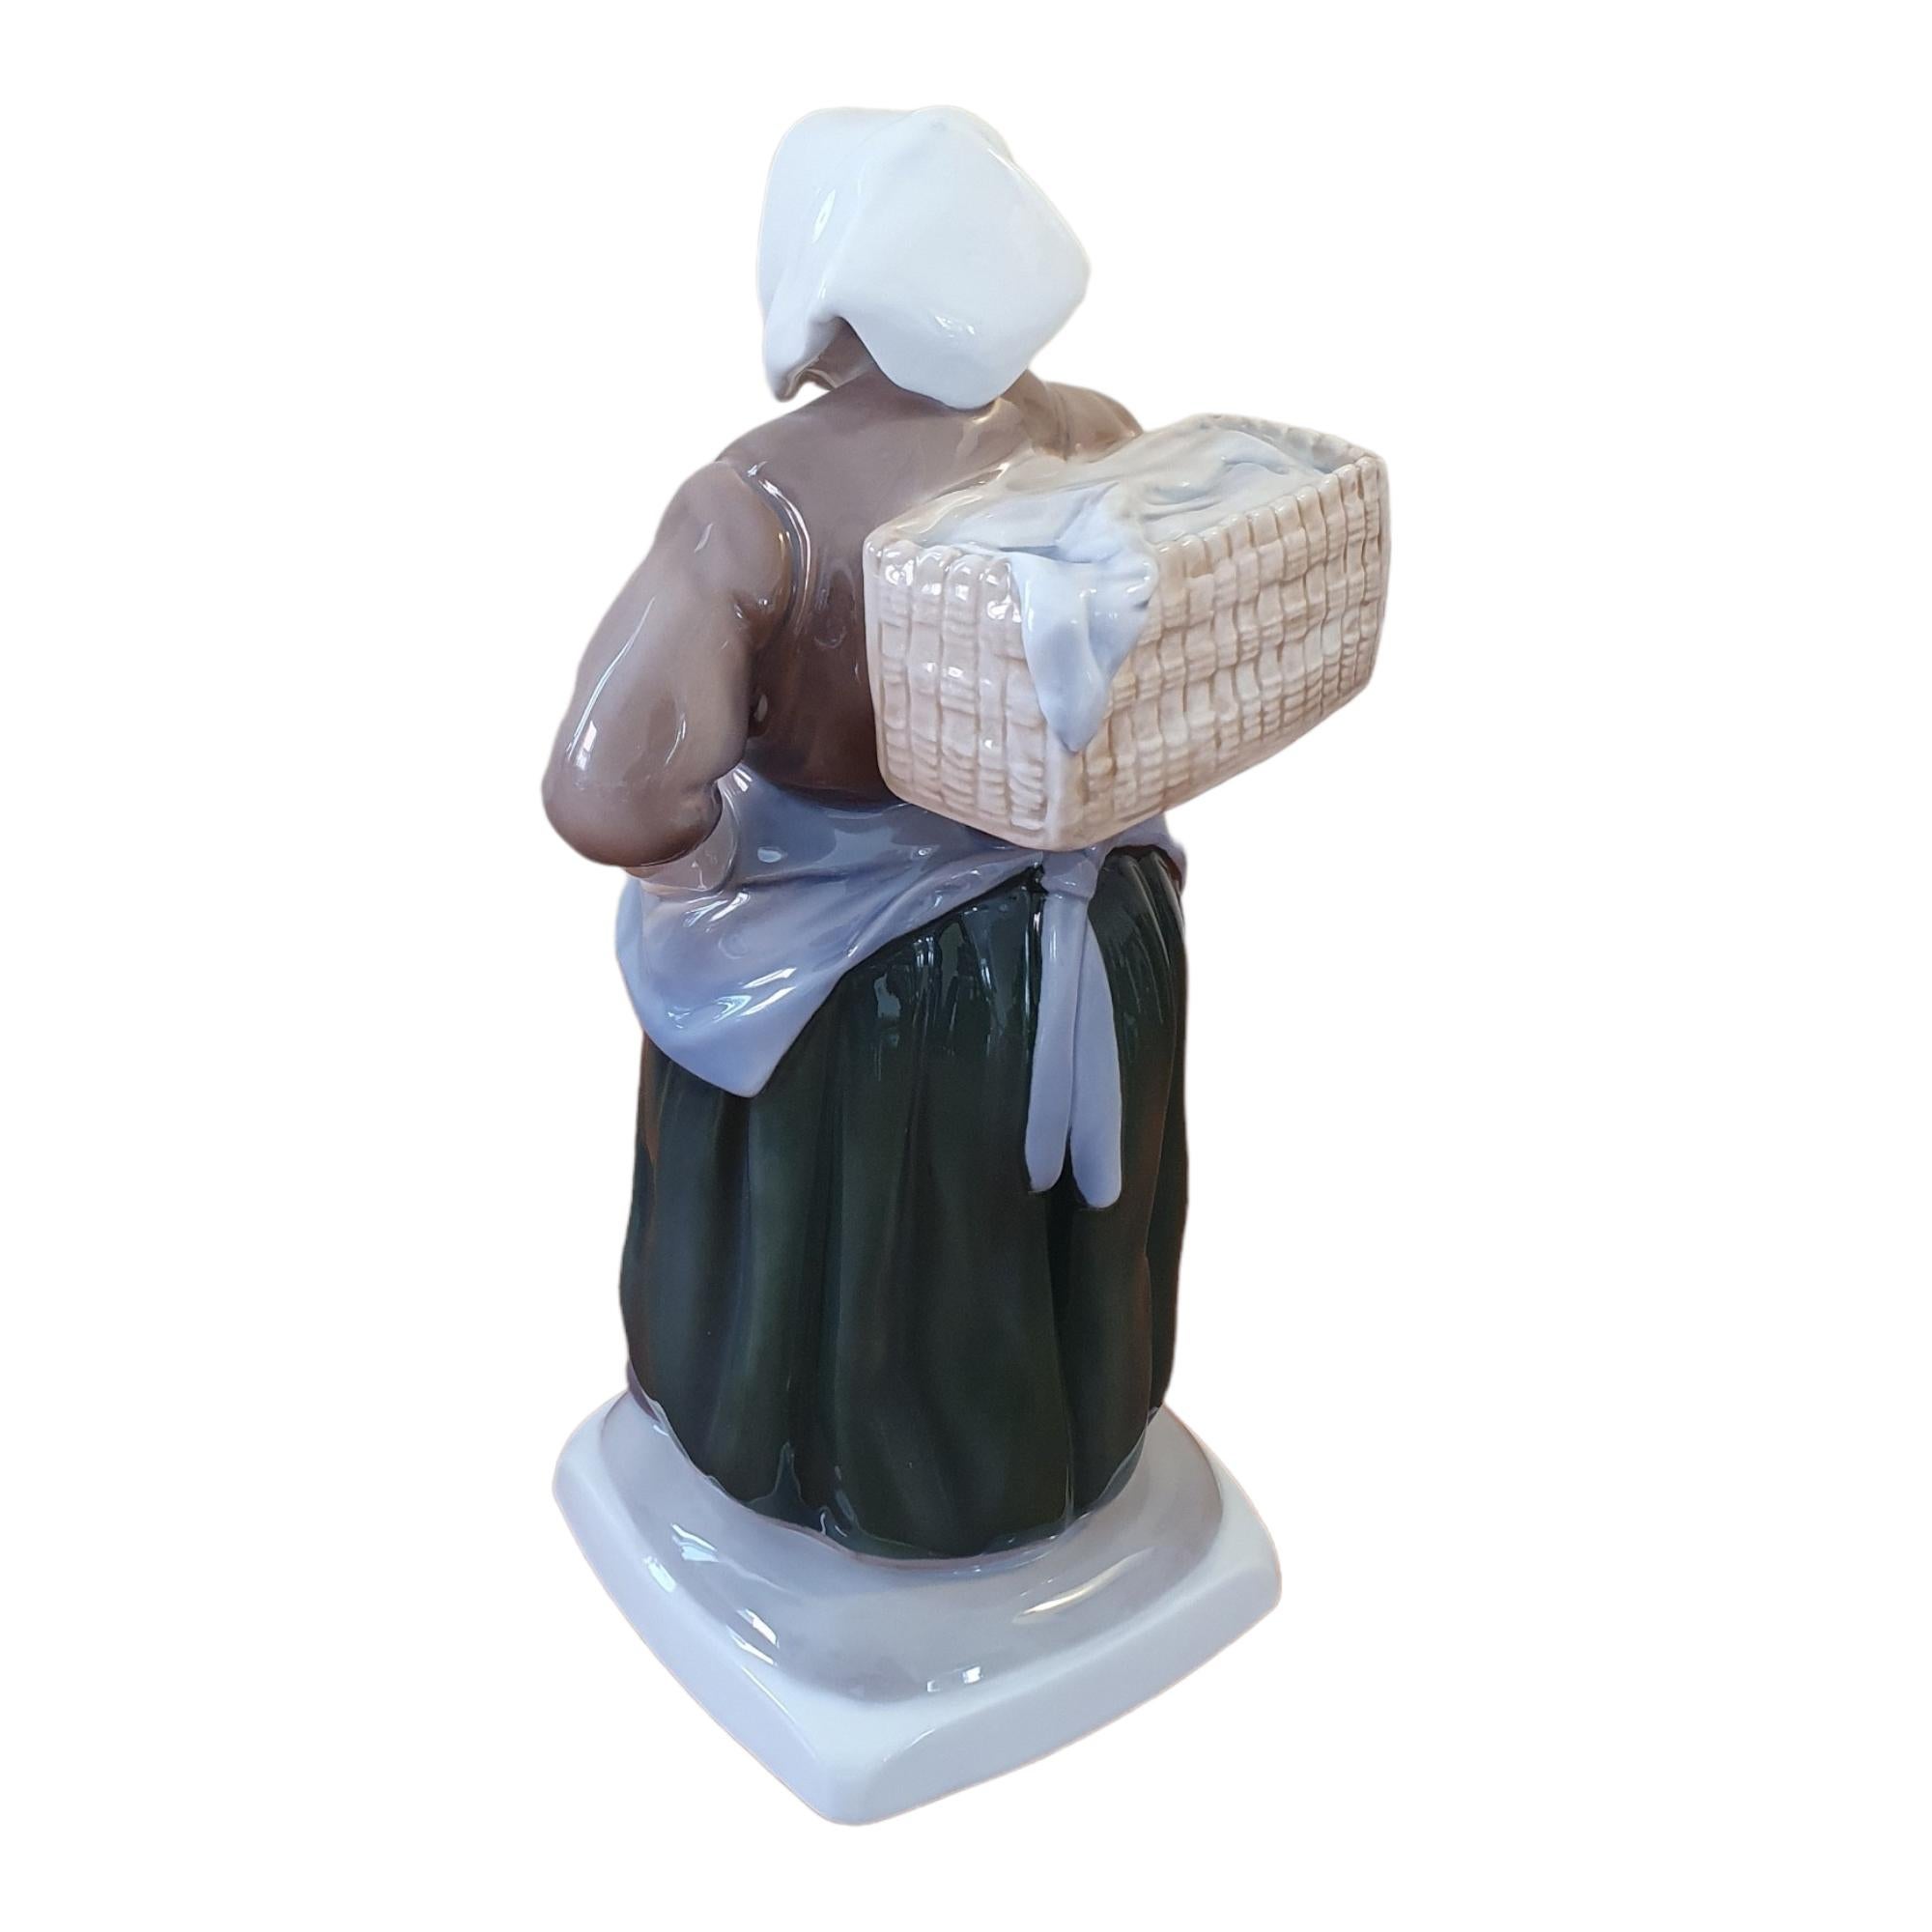 Glazed 20th century glazed Porcelain Fishermans Wife figurine For Sale